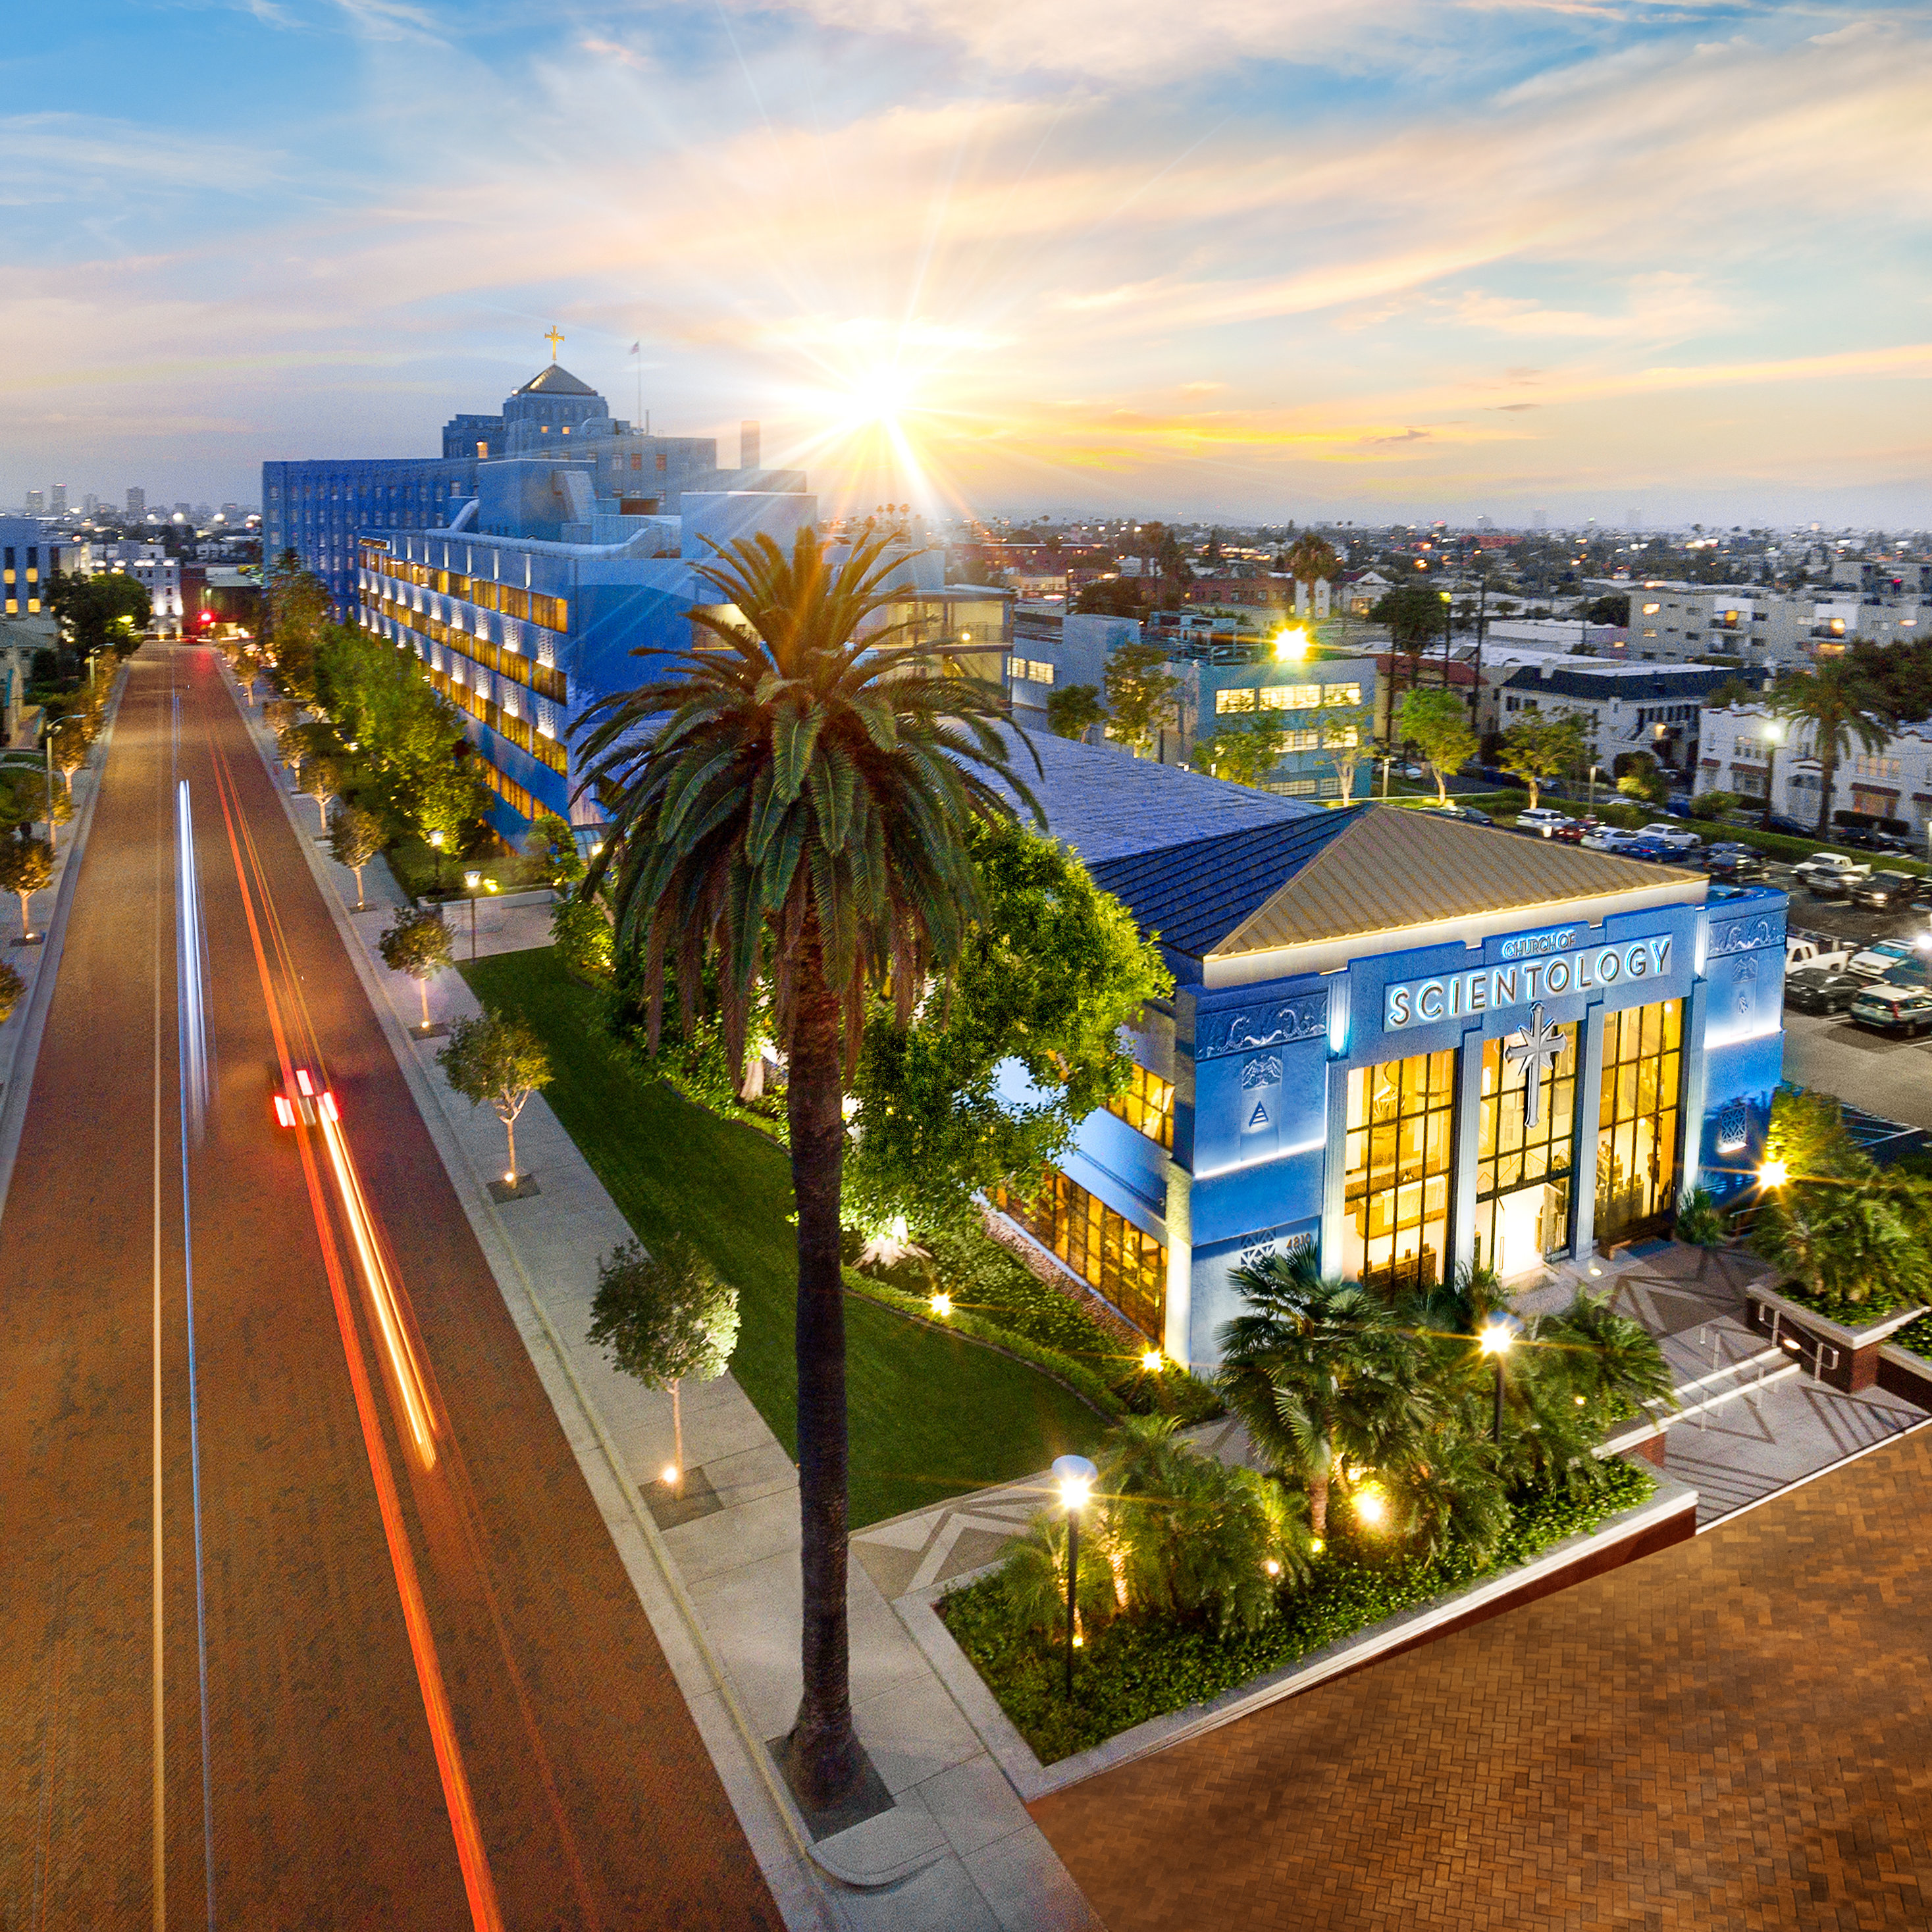 Los Angeles É dado acesso total aos espectadores das vistas e acontecimentos dentro da Igreja de Scientology localizada ao longo da Sunset Boulevard e L. Ron Hubbard Way.